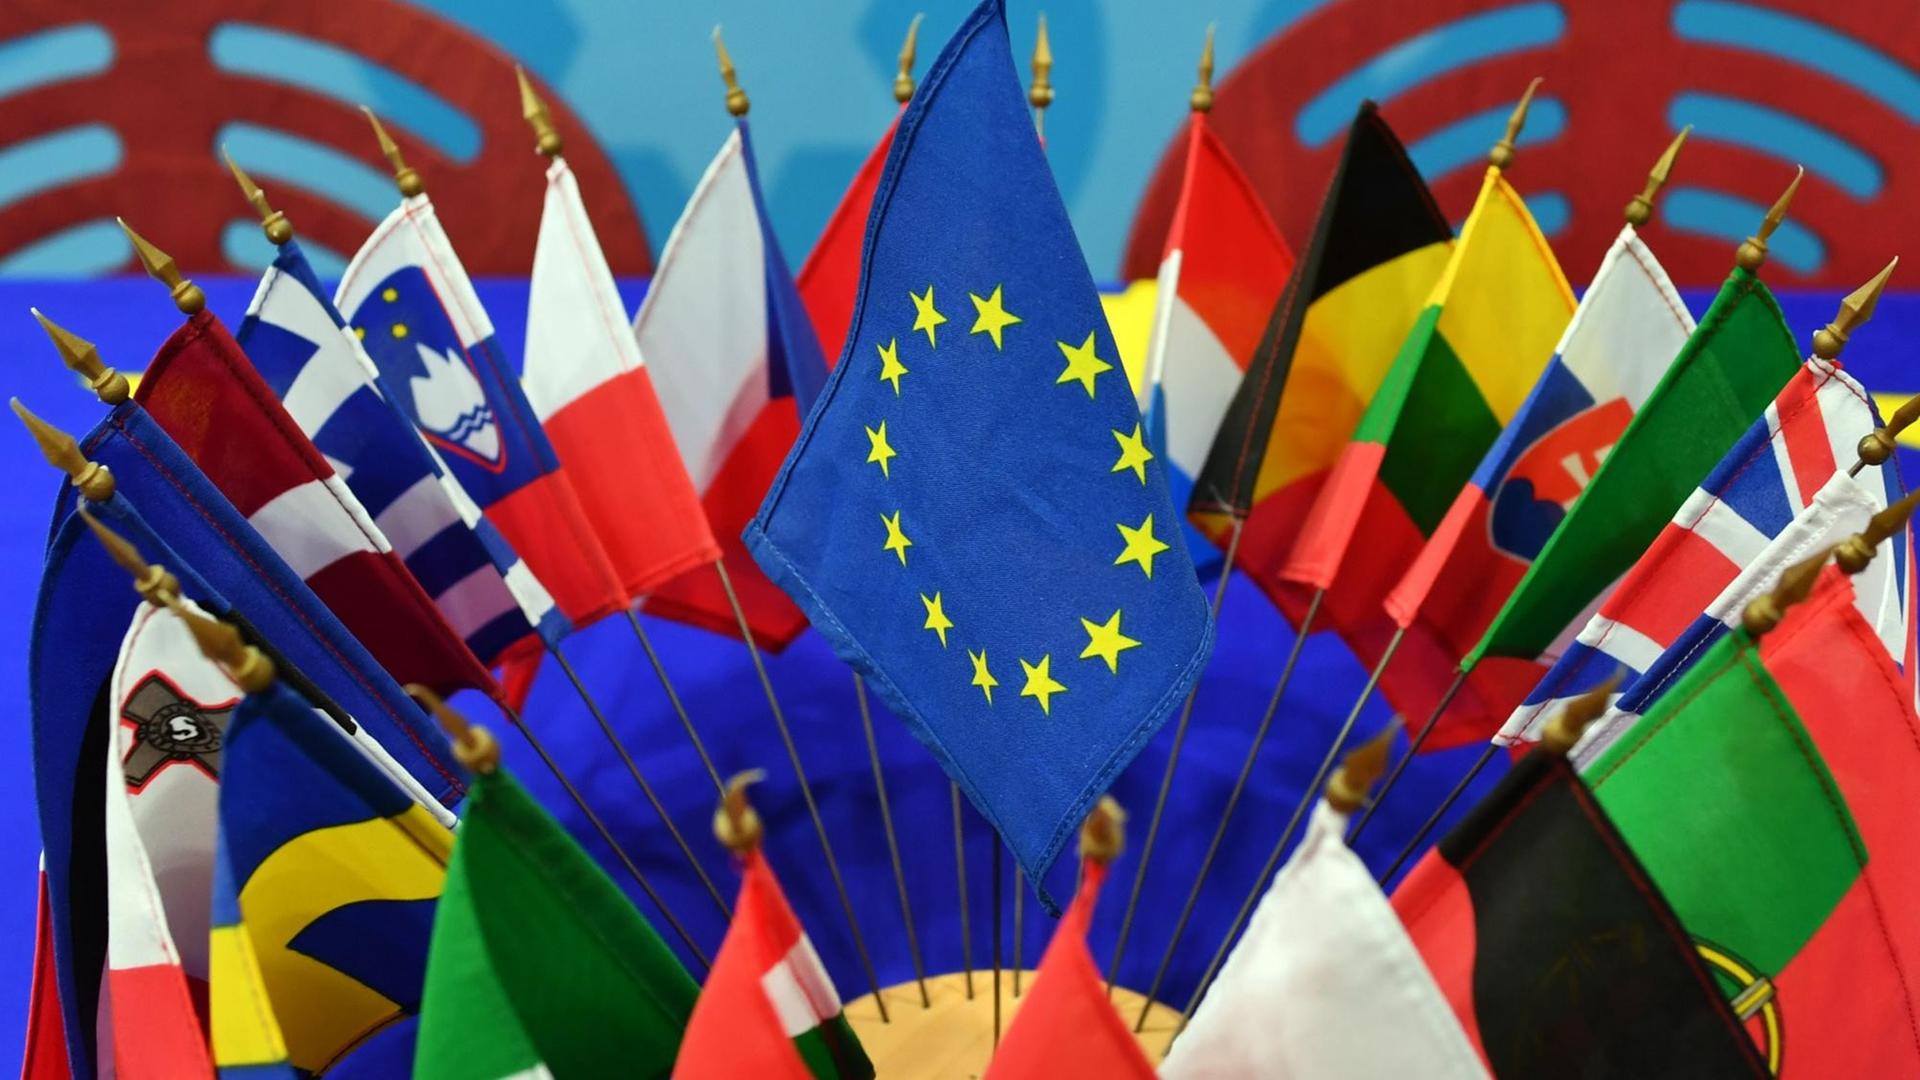 Sie sehen die Flaggen der Mitgliedsstaaten der EU, zusammen mit der EU-Flagge auf einem Tisch.